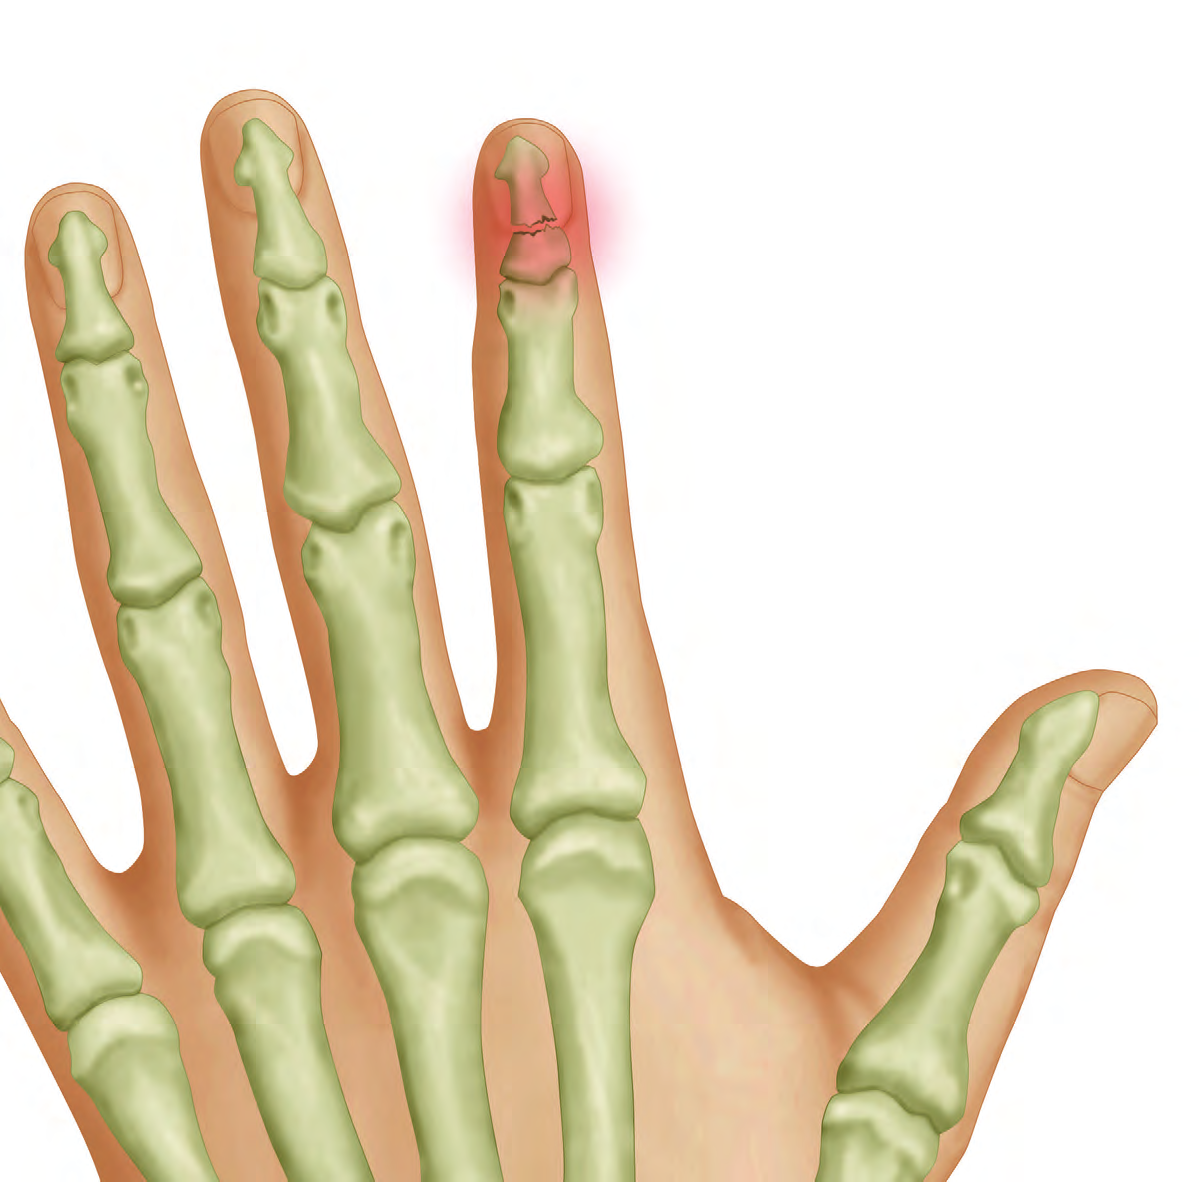 FRACTURAS Y LUXACIONES DE MANO CLÍNICA Traumatismos generalmente directos de origen laboral o deportivo, dan lugar a distintas lesiones de mano y dedos, pudiendo tener como resultado fracturas o